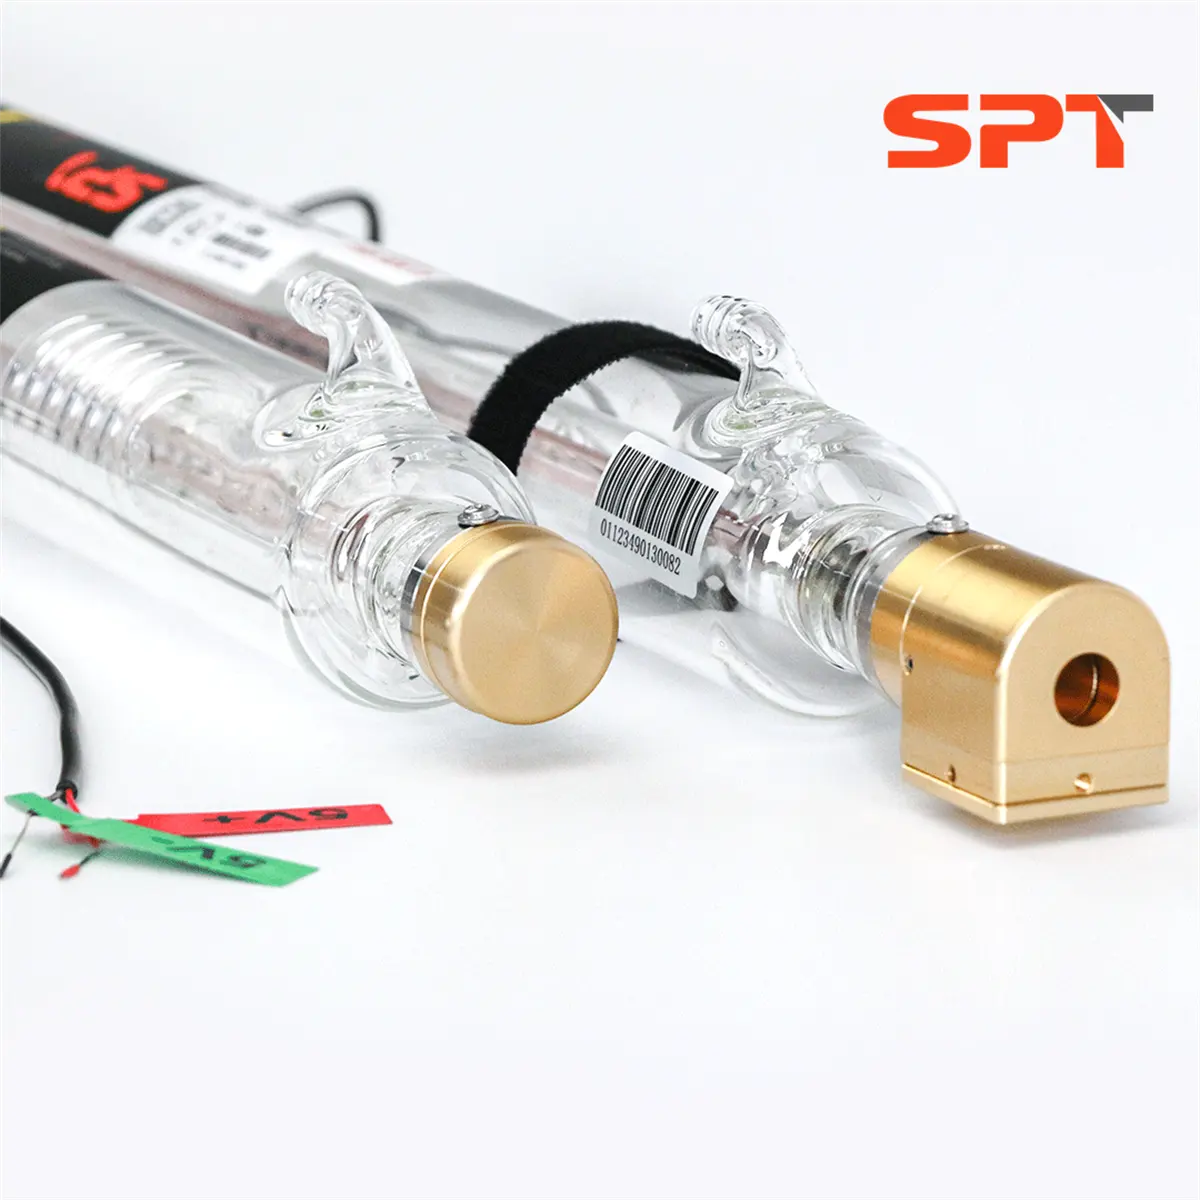 SPT düşük güç CO2 lazer tüp 30W kırmızı işaretçi ile uzunluk 730mm cam lazer tüp kesme ahşap/Bez